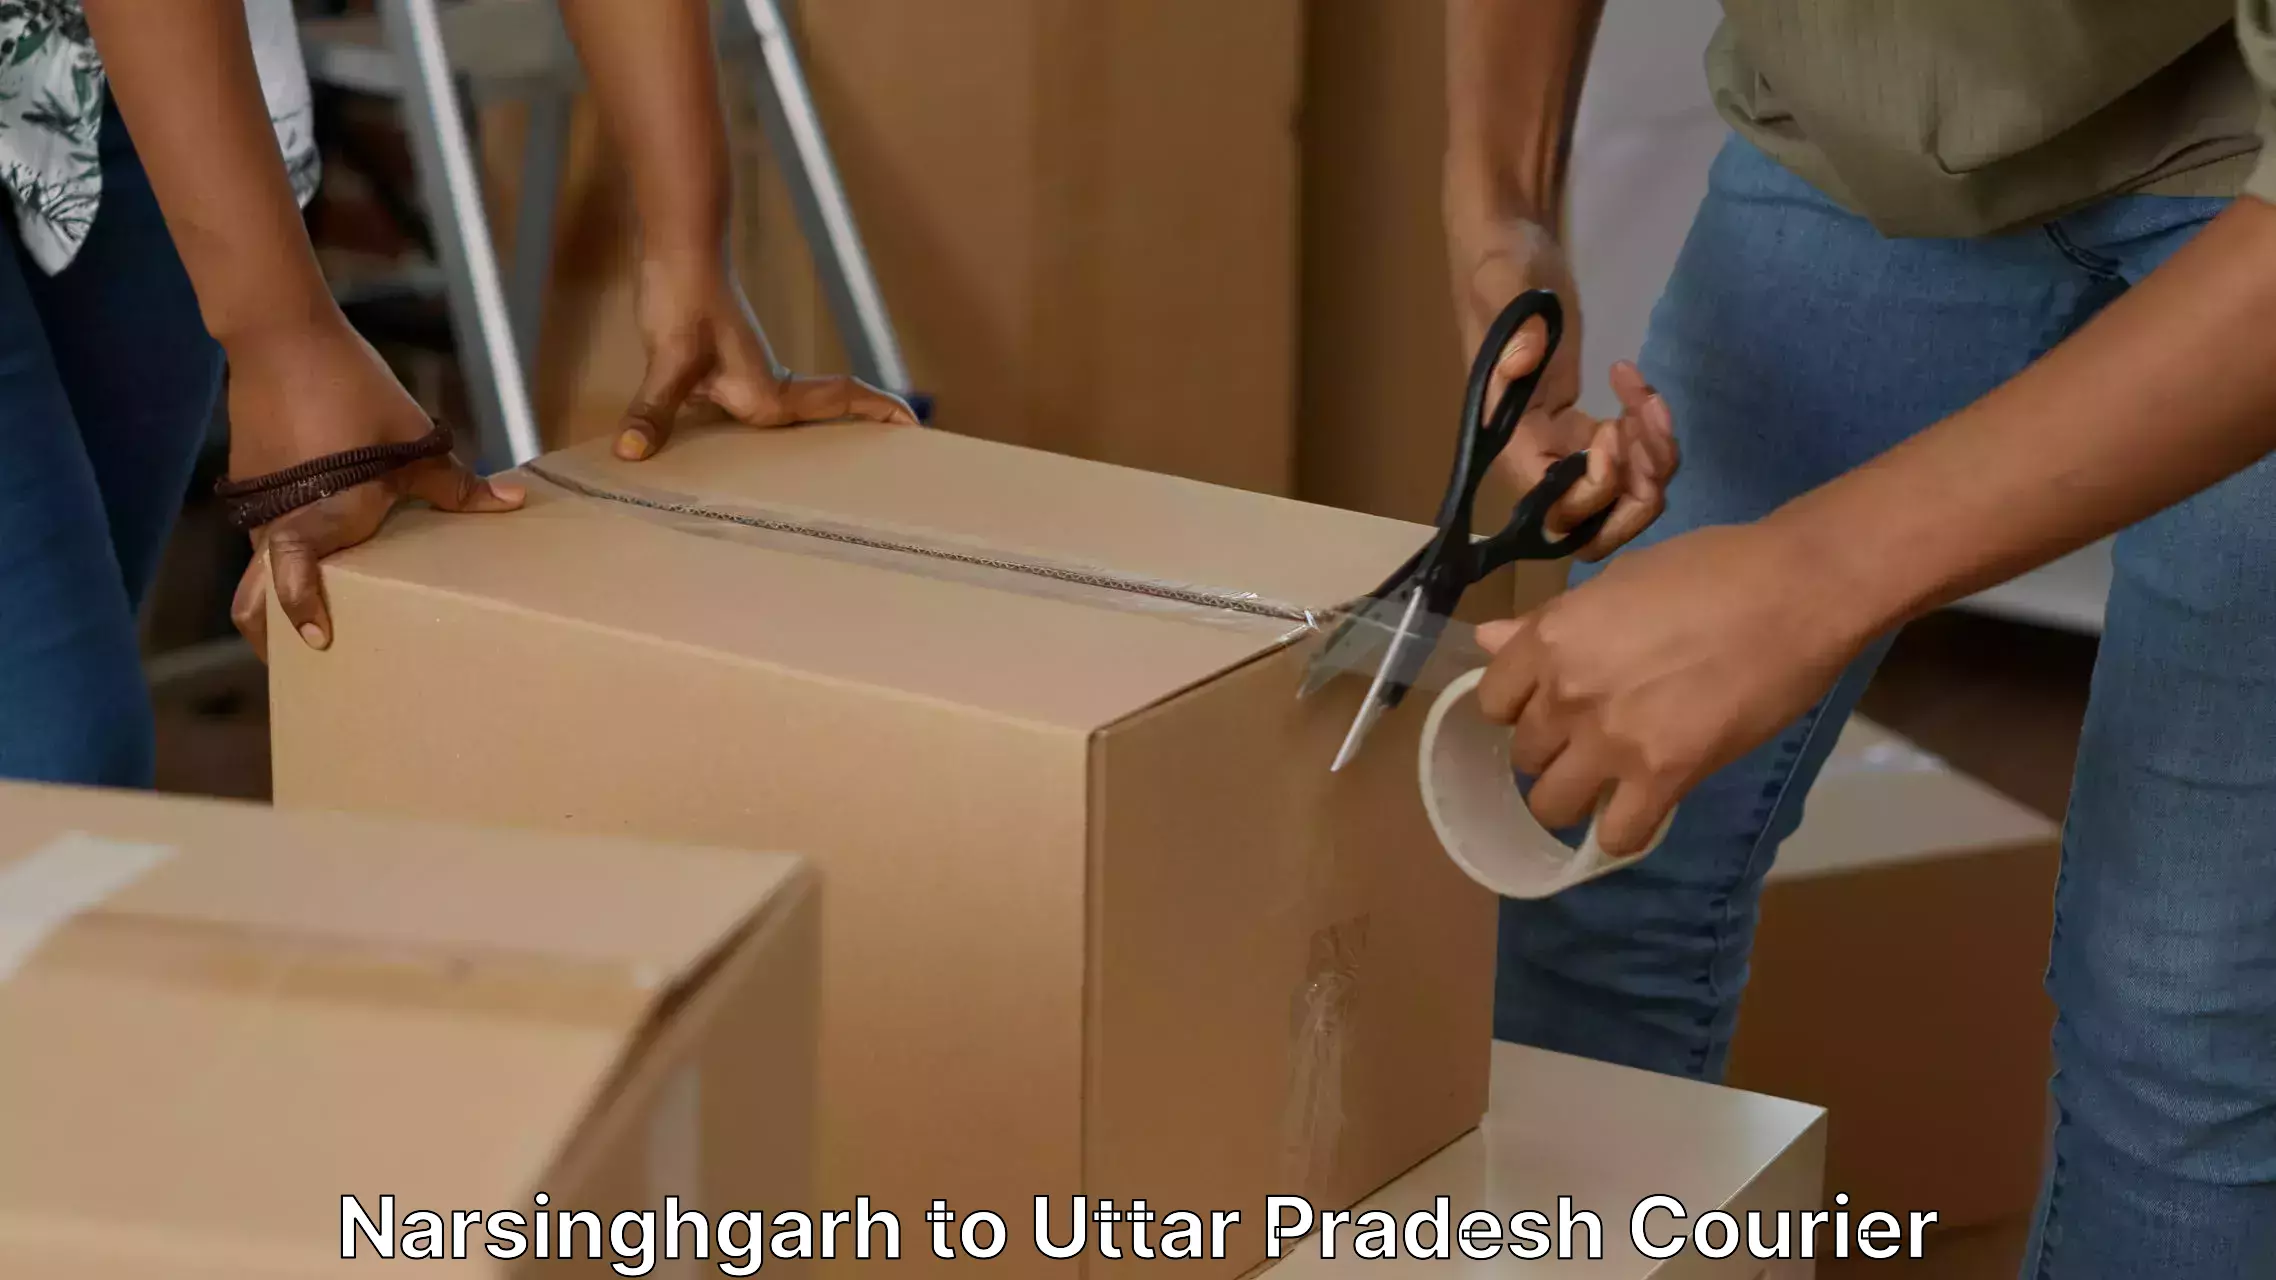 Furniture moving plans Narsinghgarh to Sewarhi